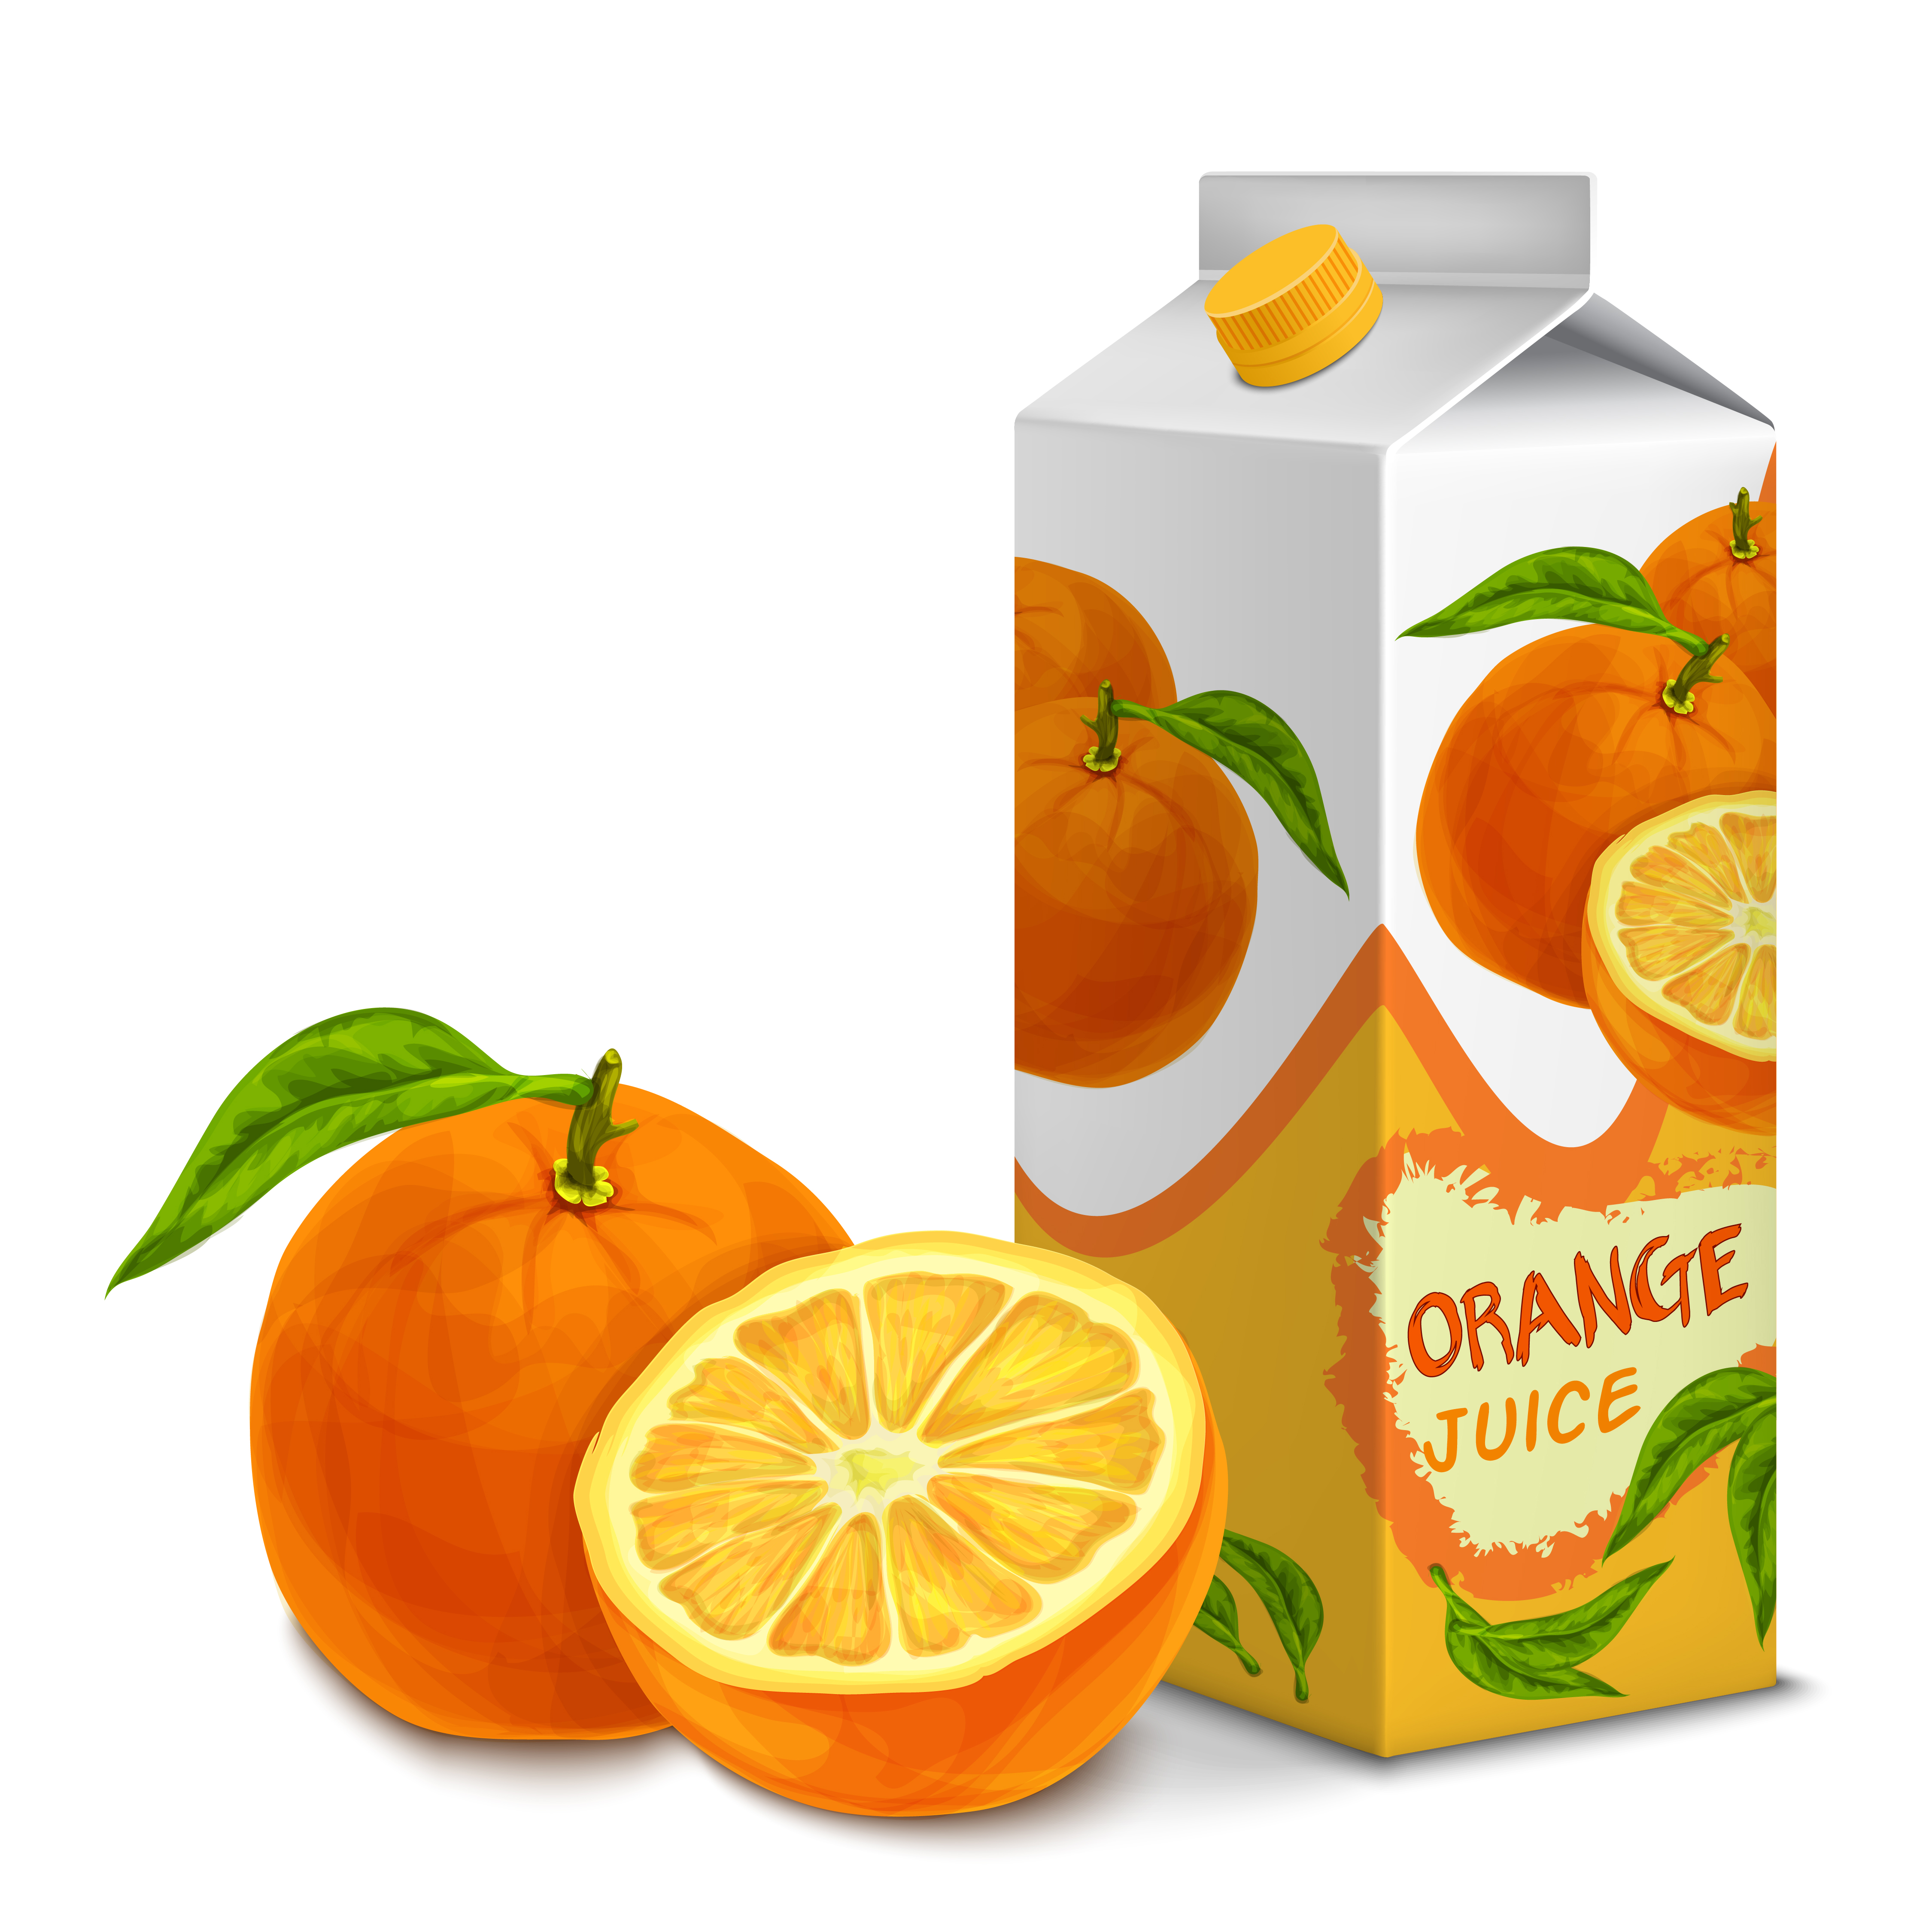 Download Juice pack orange - Download Free Vectors, Clipart ...